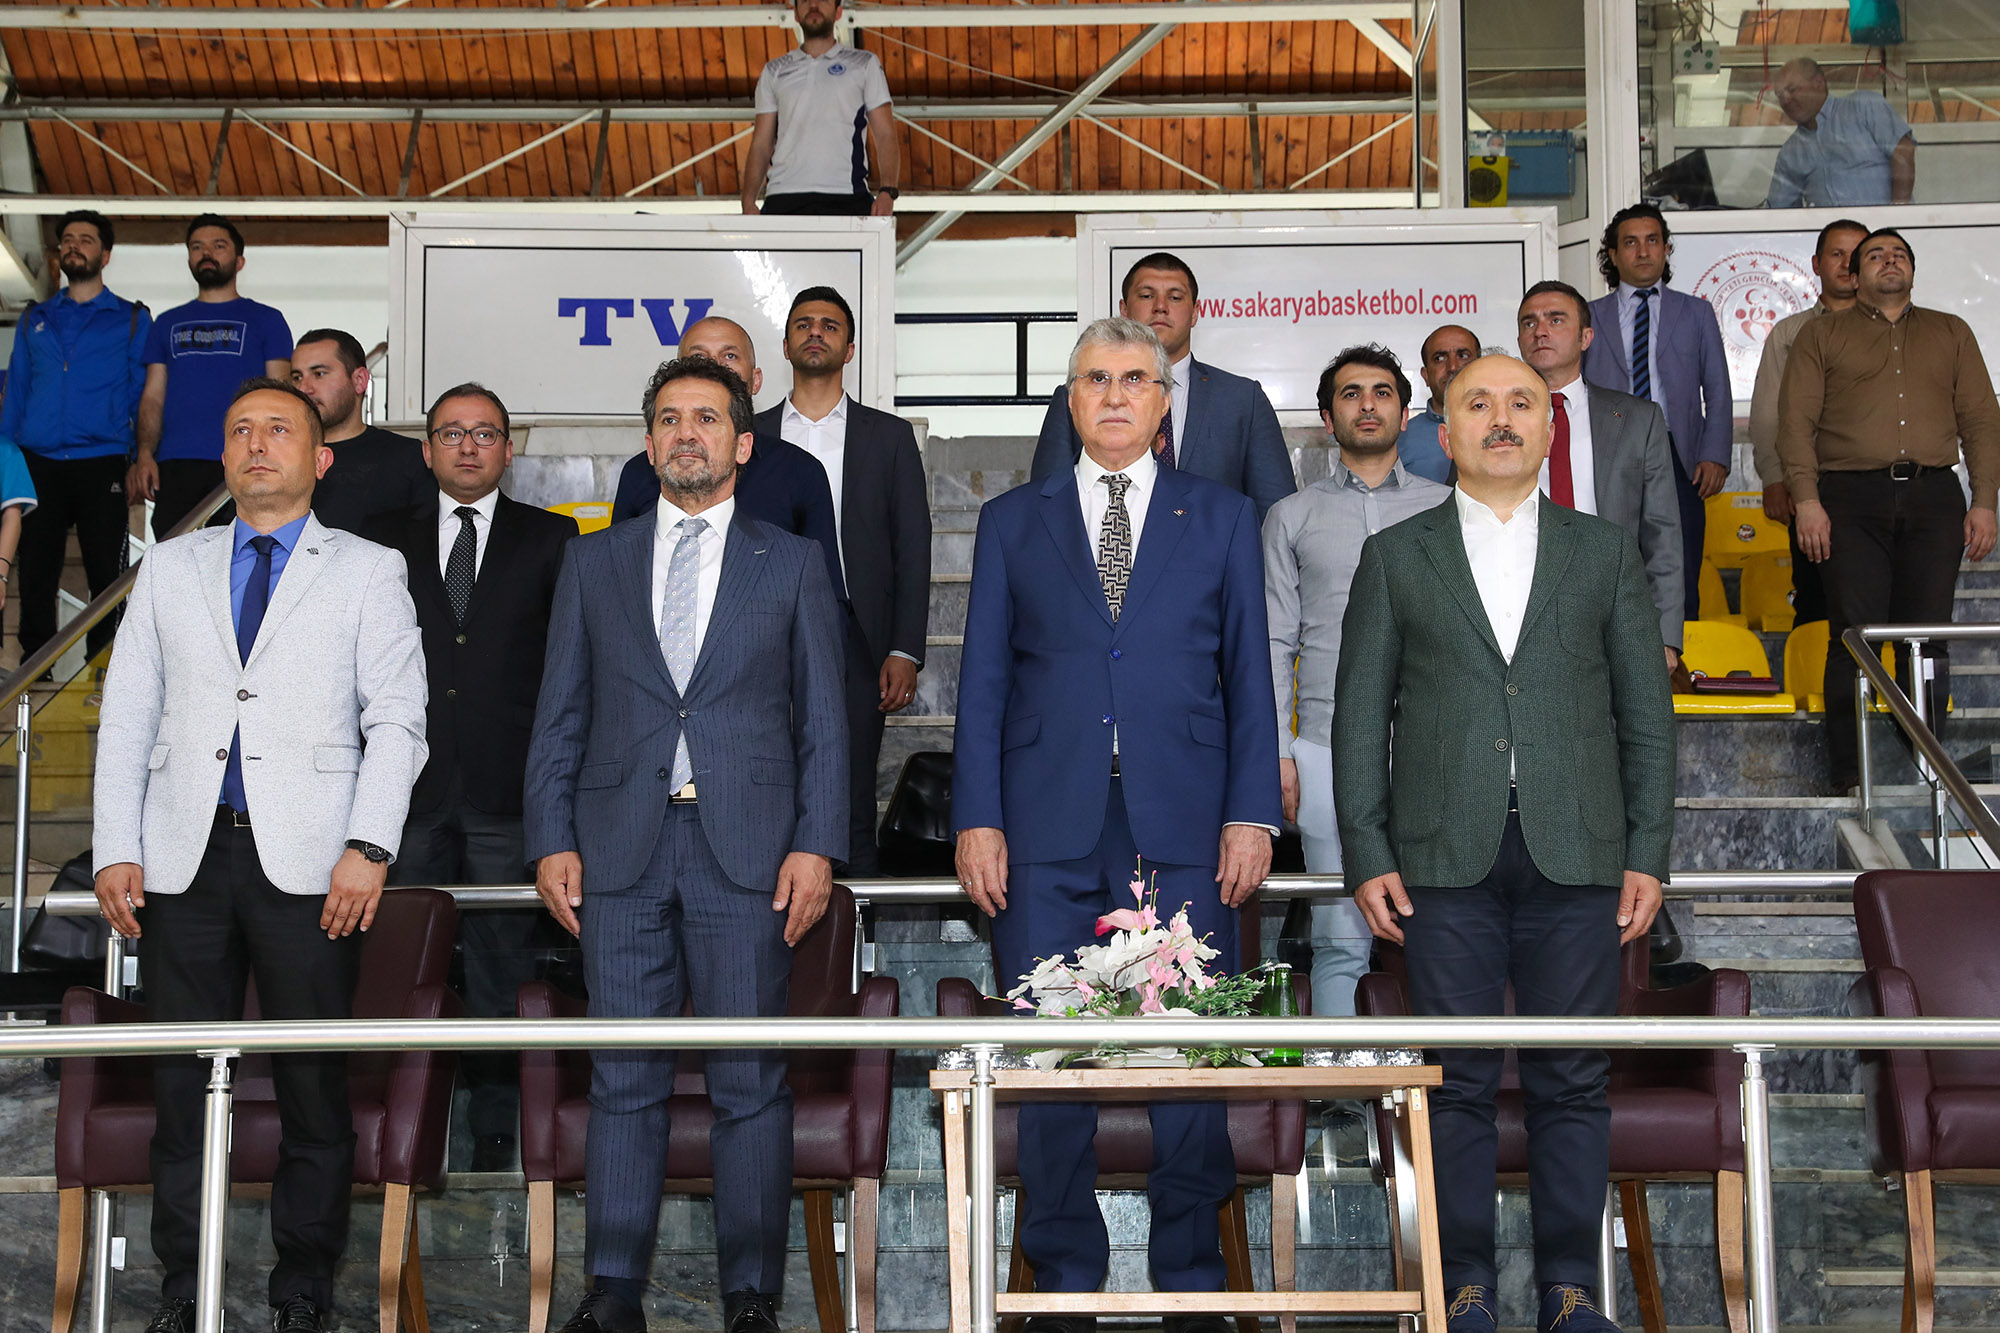 Türkiye Minikler Masa Tenisi Şampiyonası başladı